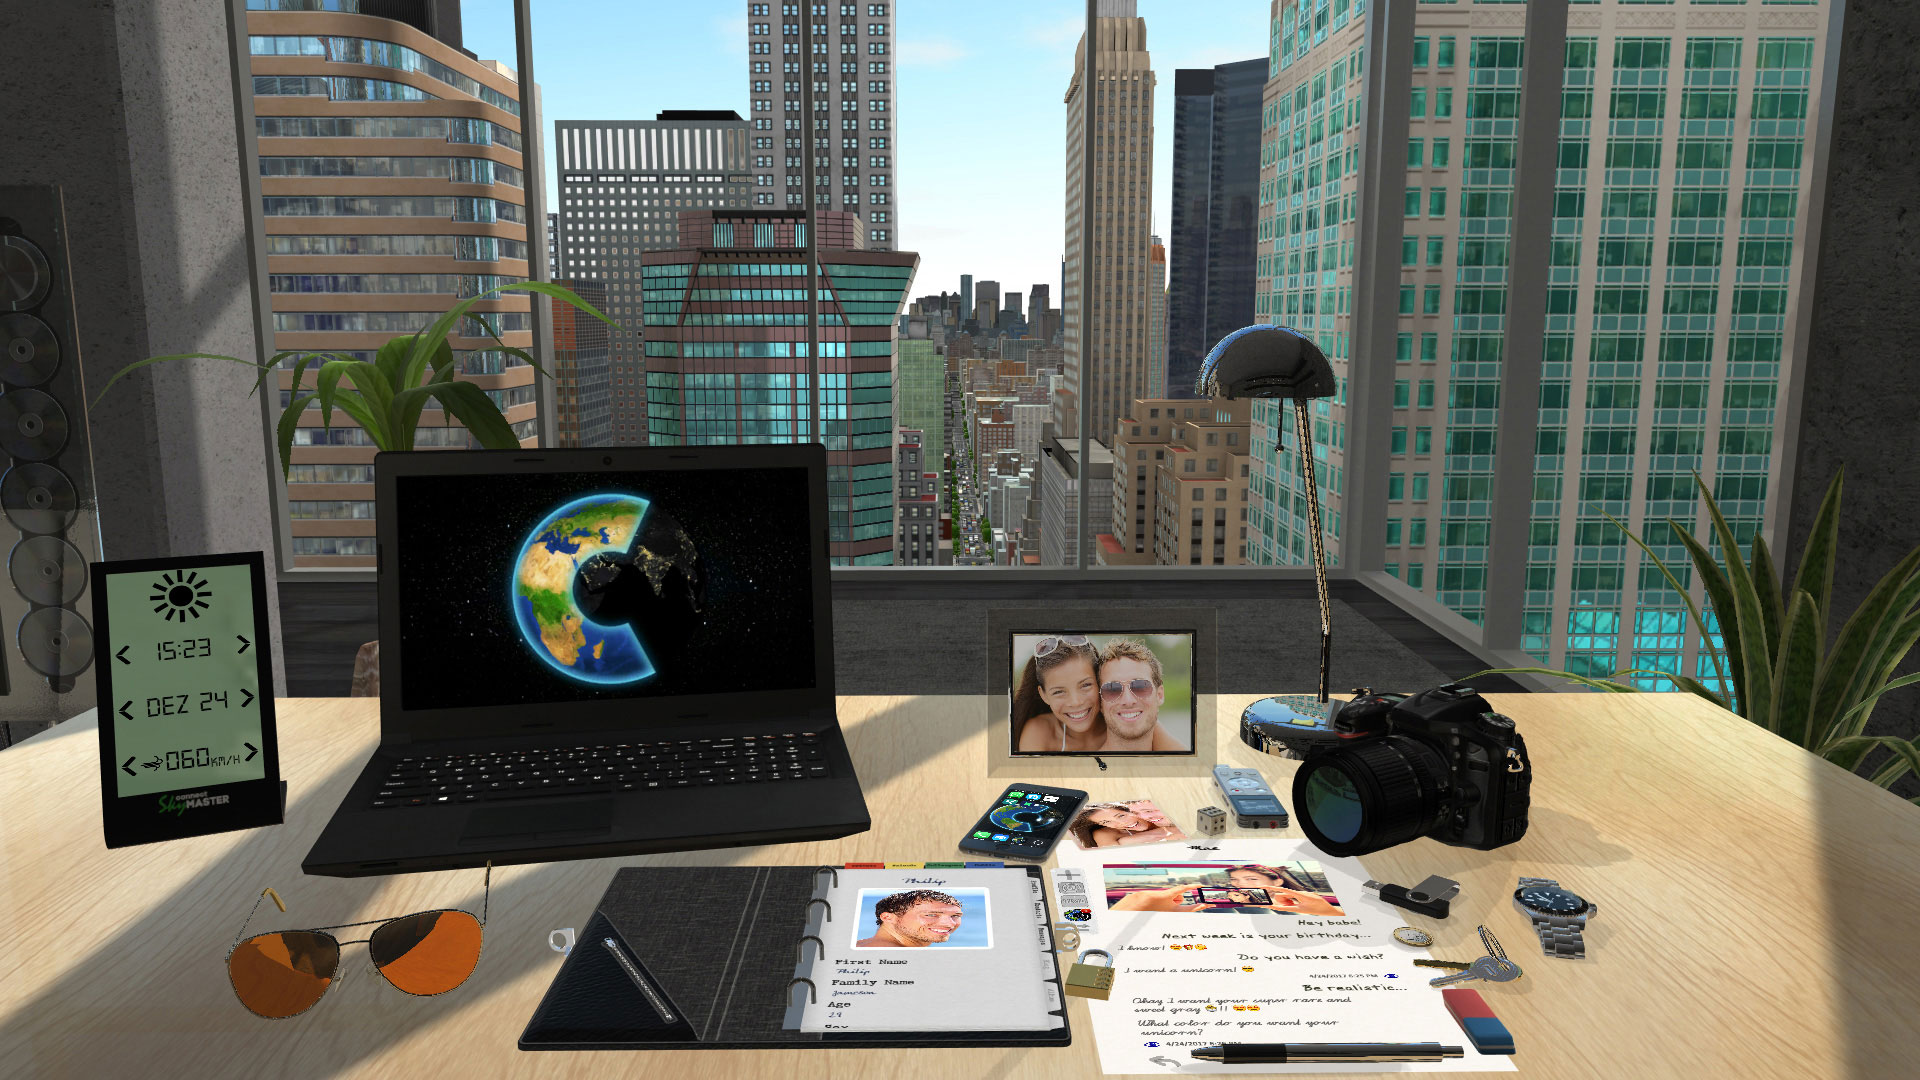 Home world 3. Реальный мир и виртуальный мир. Системные требования для VR. Виртуальный мир игра 3д 2020.